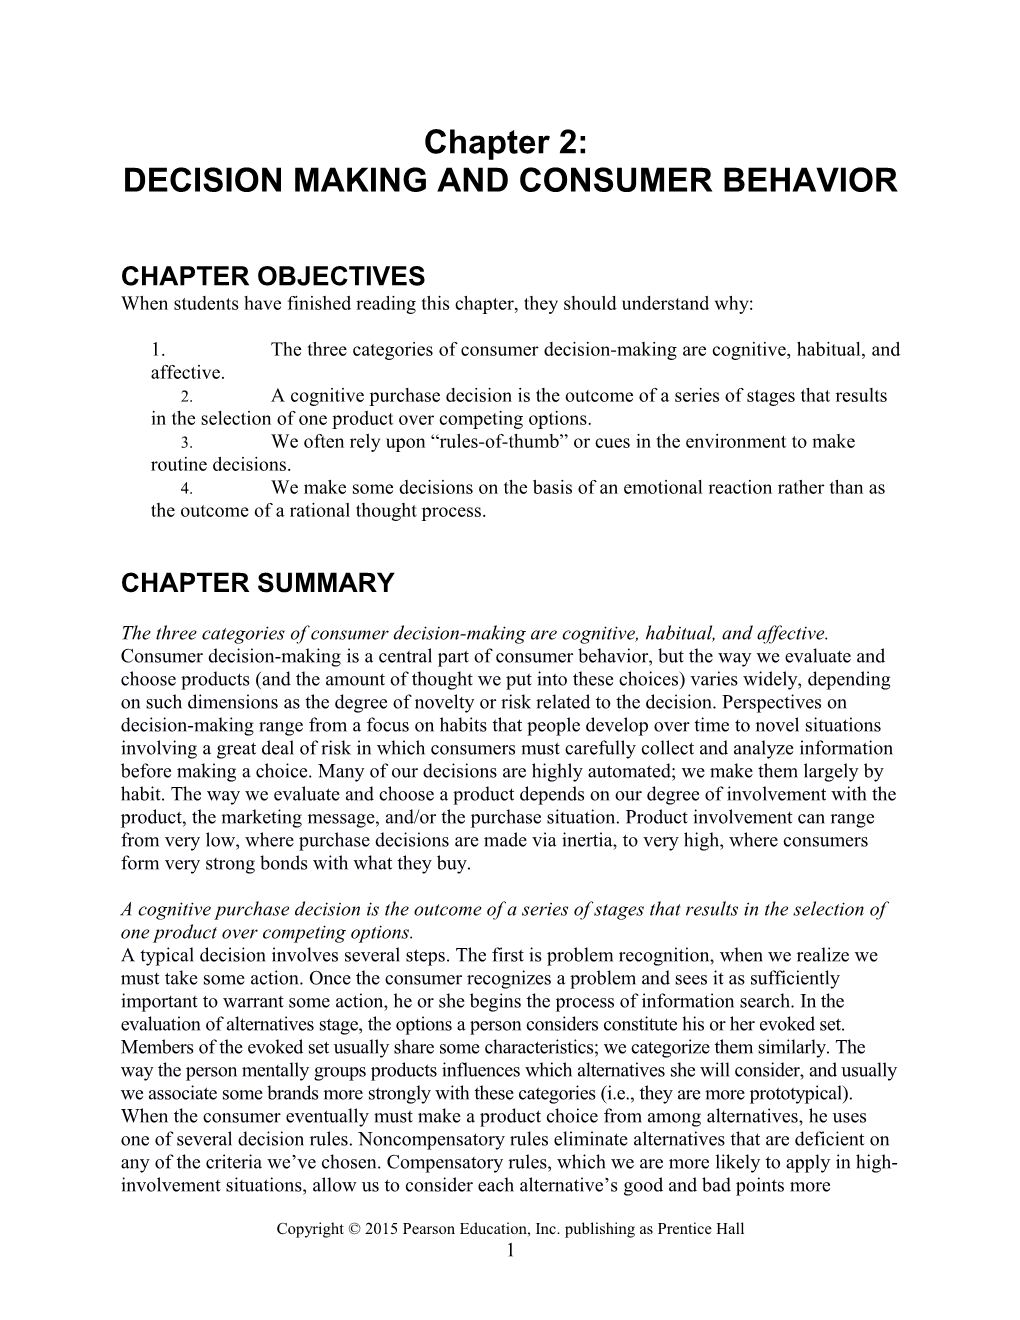 Decision Makingand Consumer Behavior